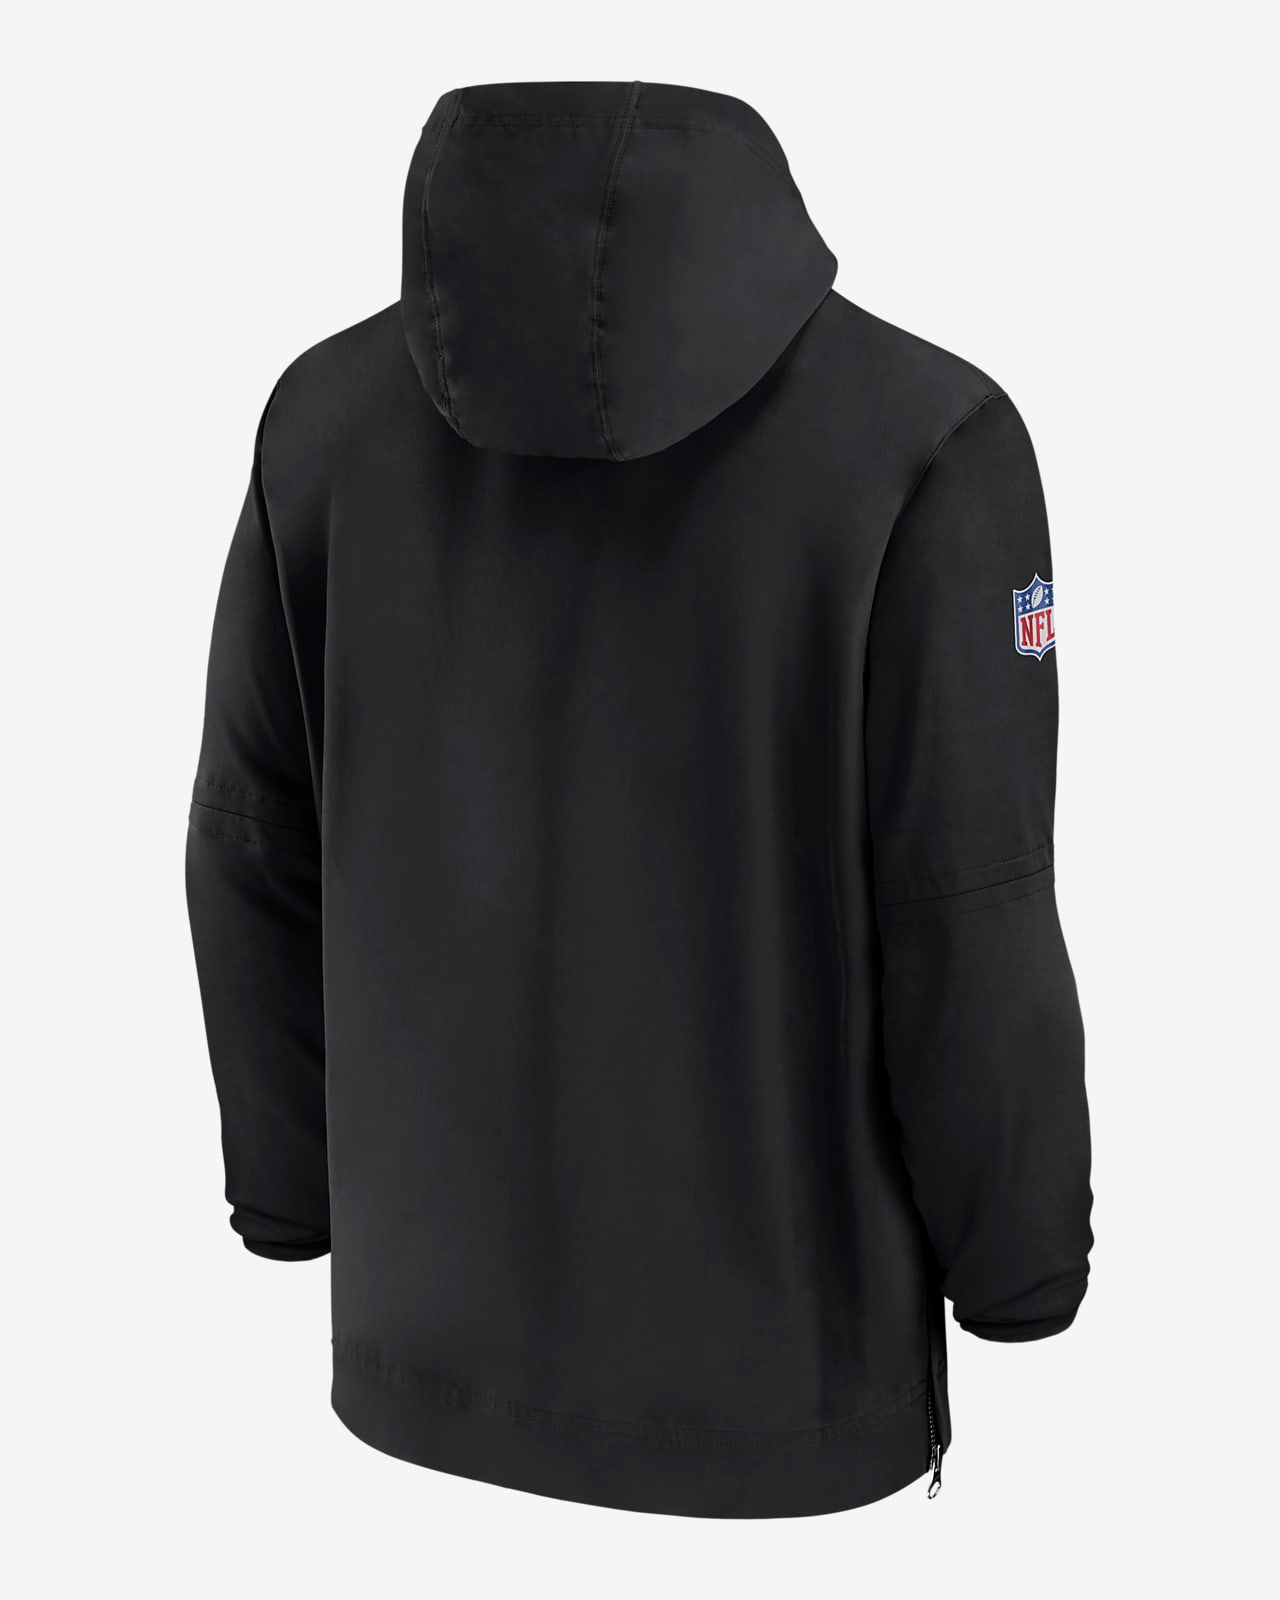 Cincinnati Bengals Sideline Men's Nike NFL 1/2-Zip Hooded Jacket